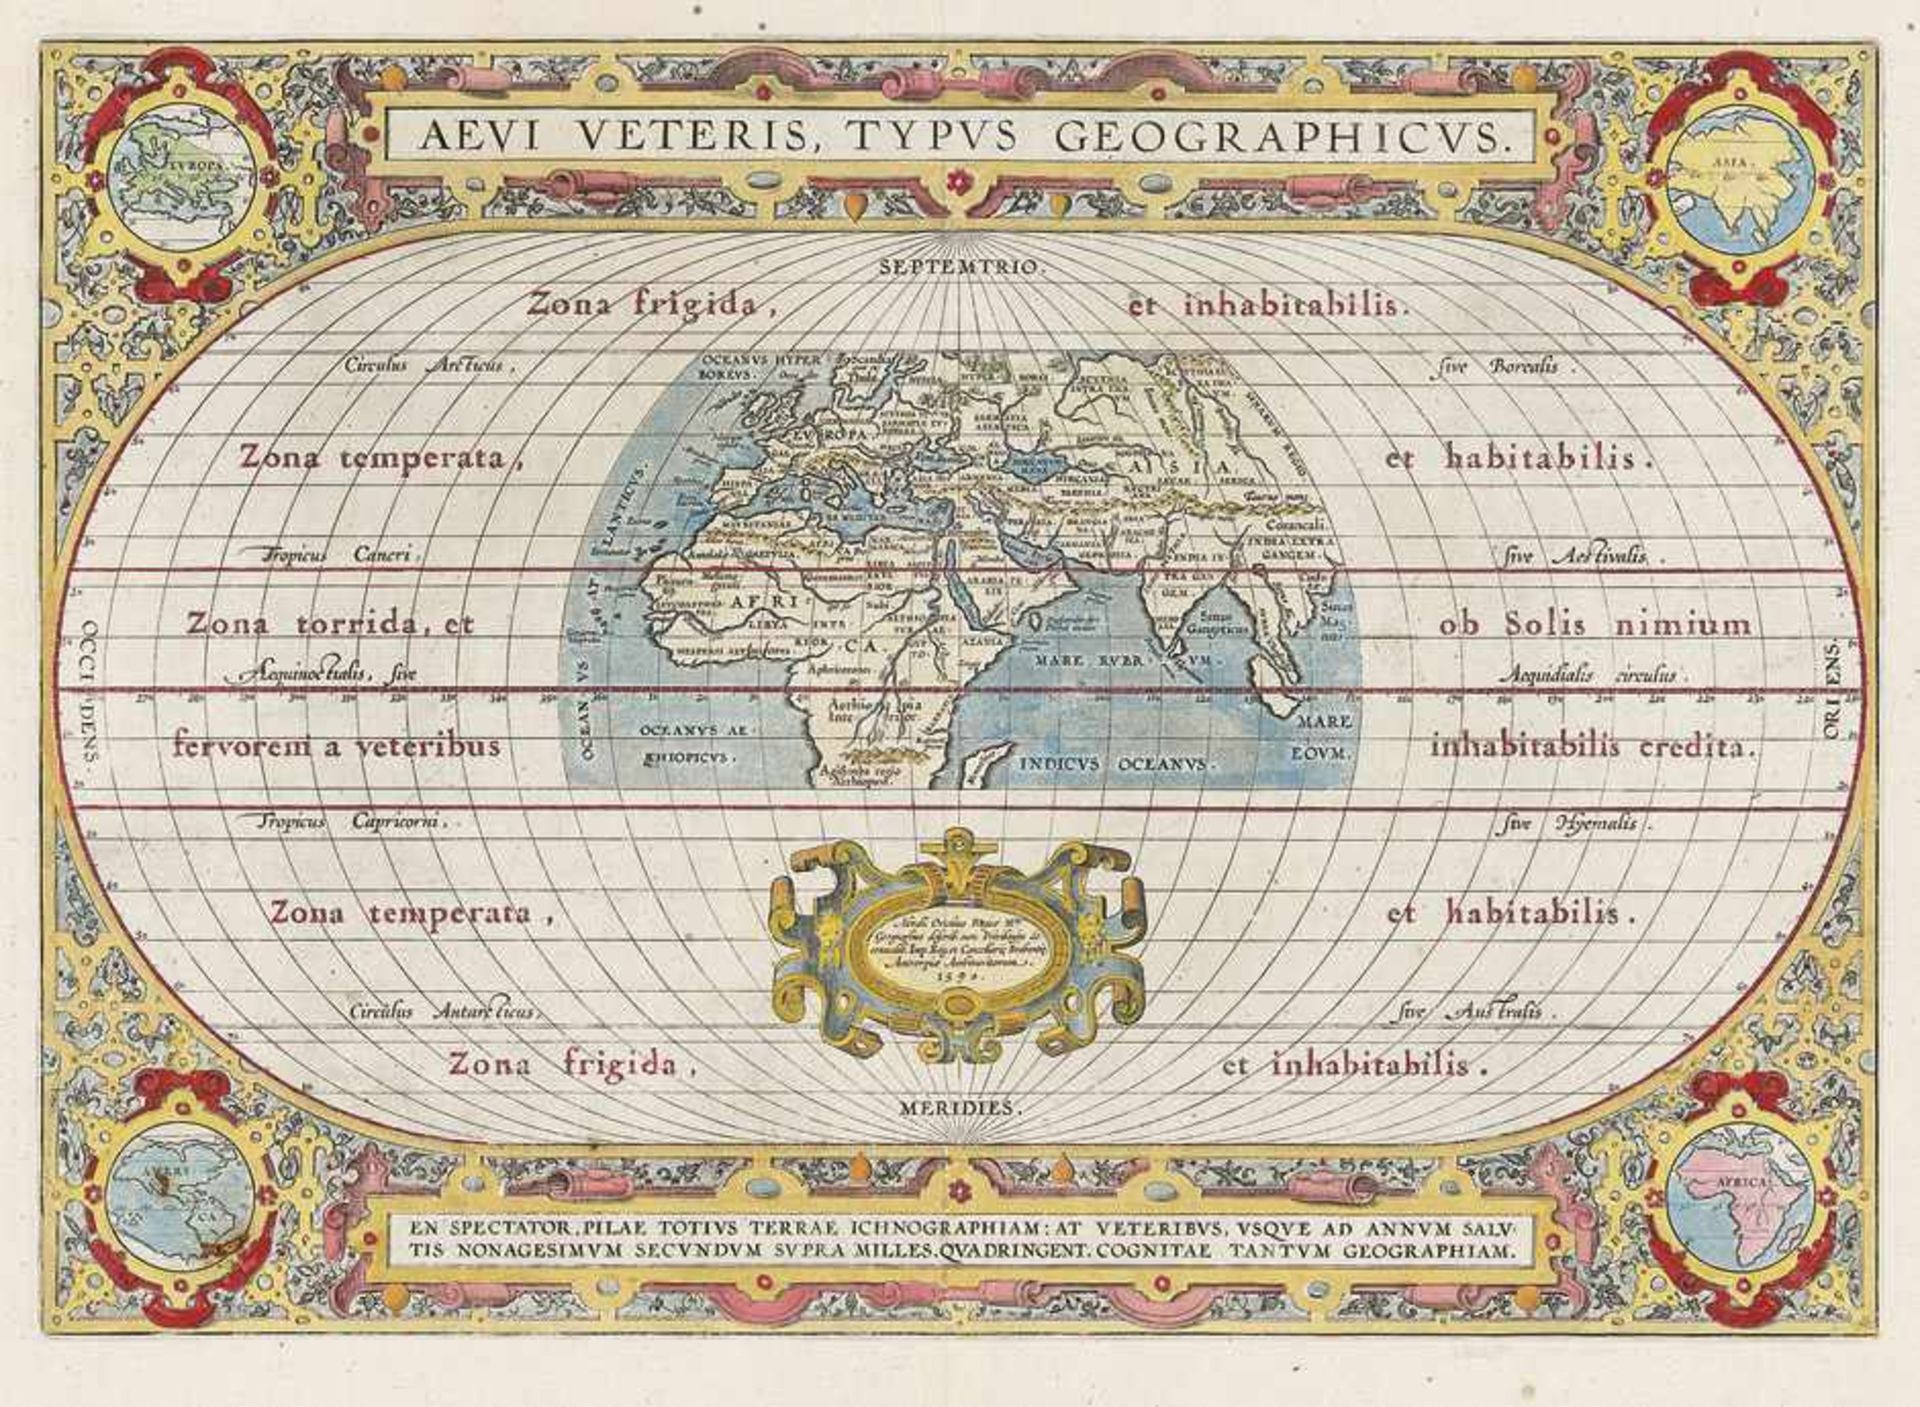 Ortelius, Abraham: Aevi veterisOrtelius, Abraham. Aevi veteris, typus geographicus. Kolorierte